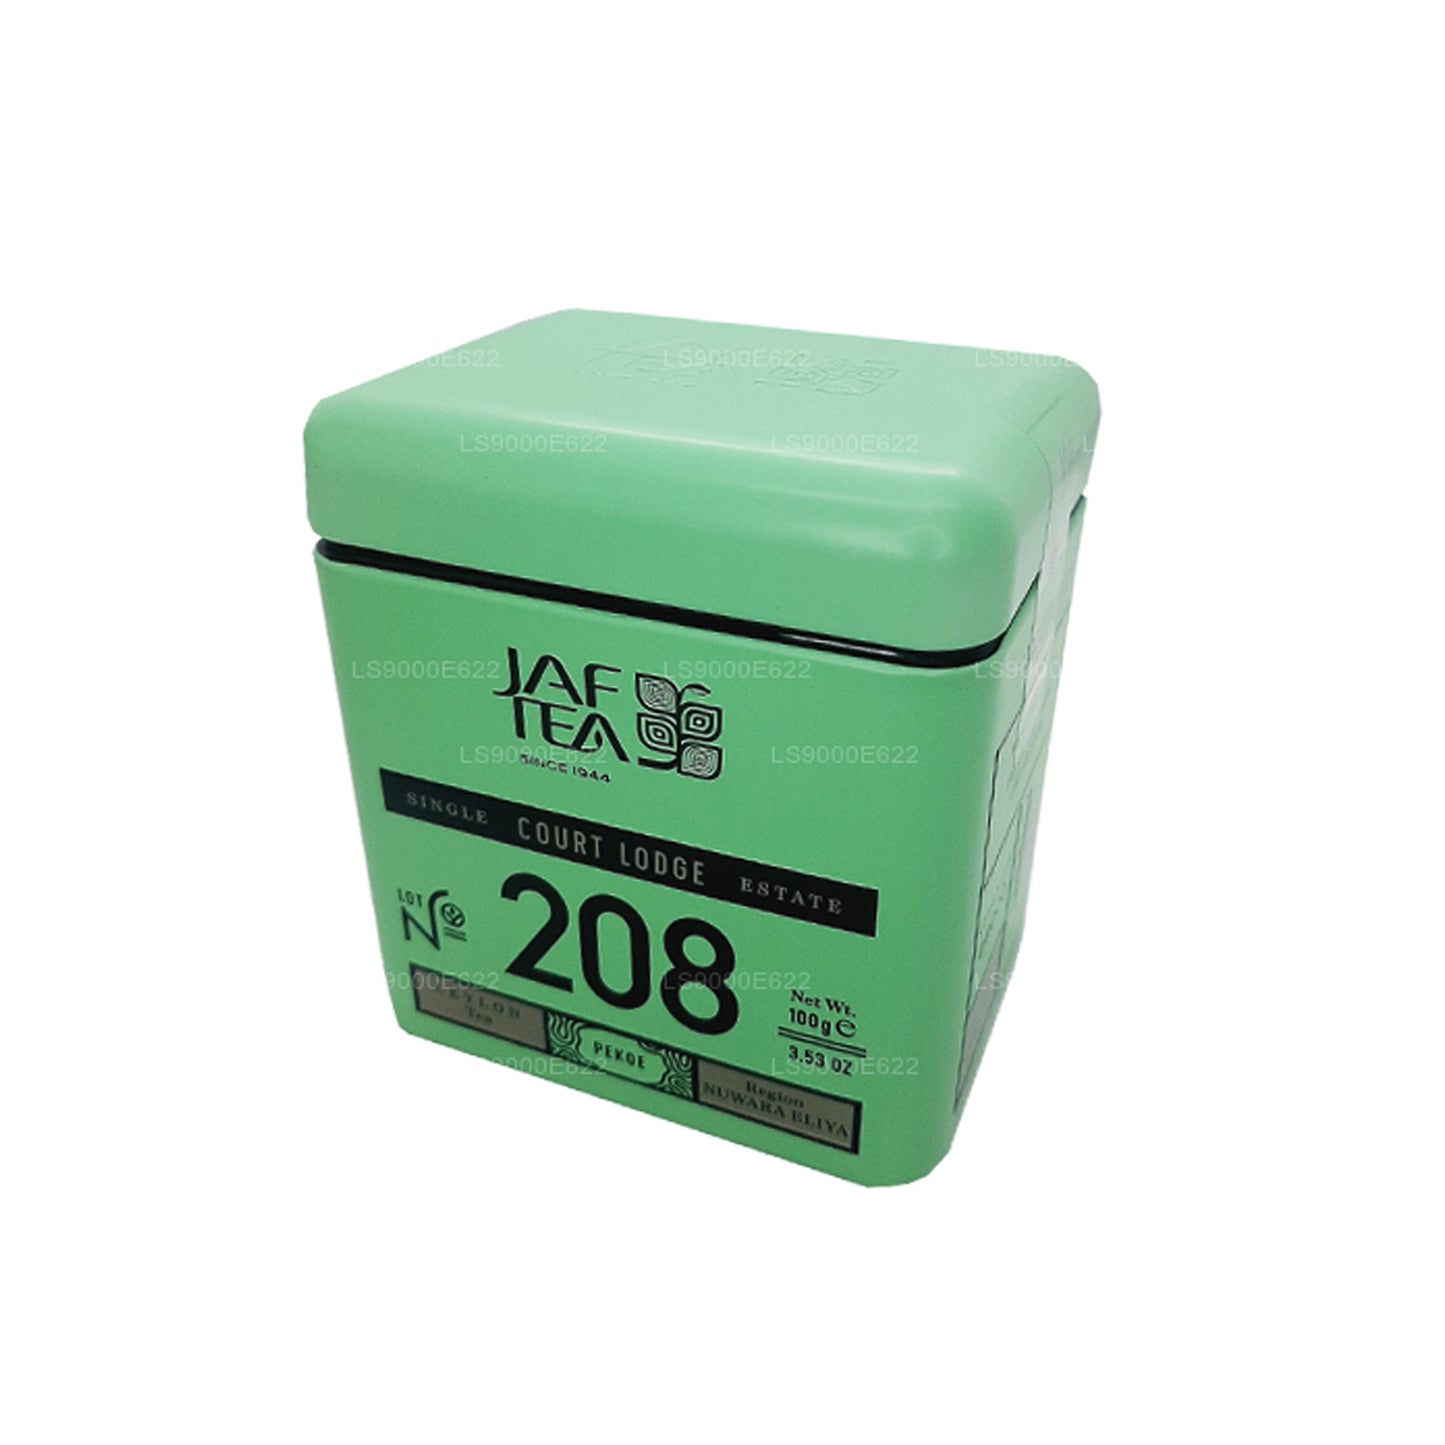 Jaf Tea シングル・リージョン・コレクション・コート・ロッジ (100g) 缶